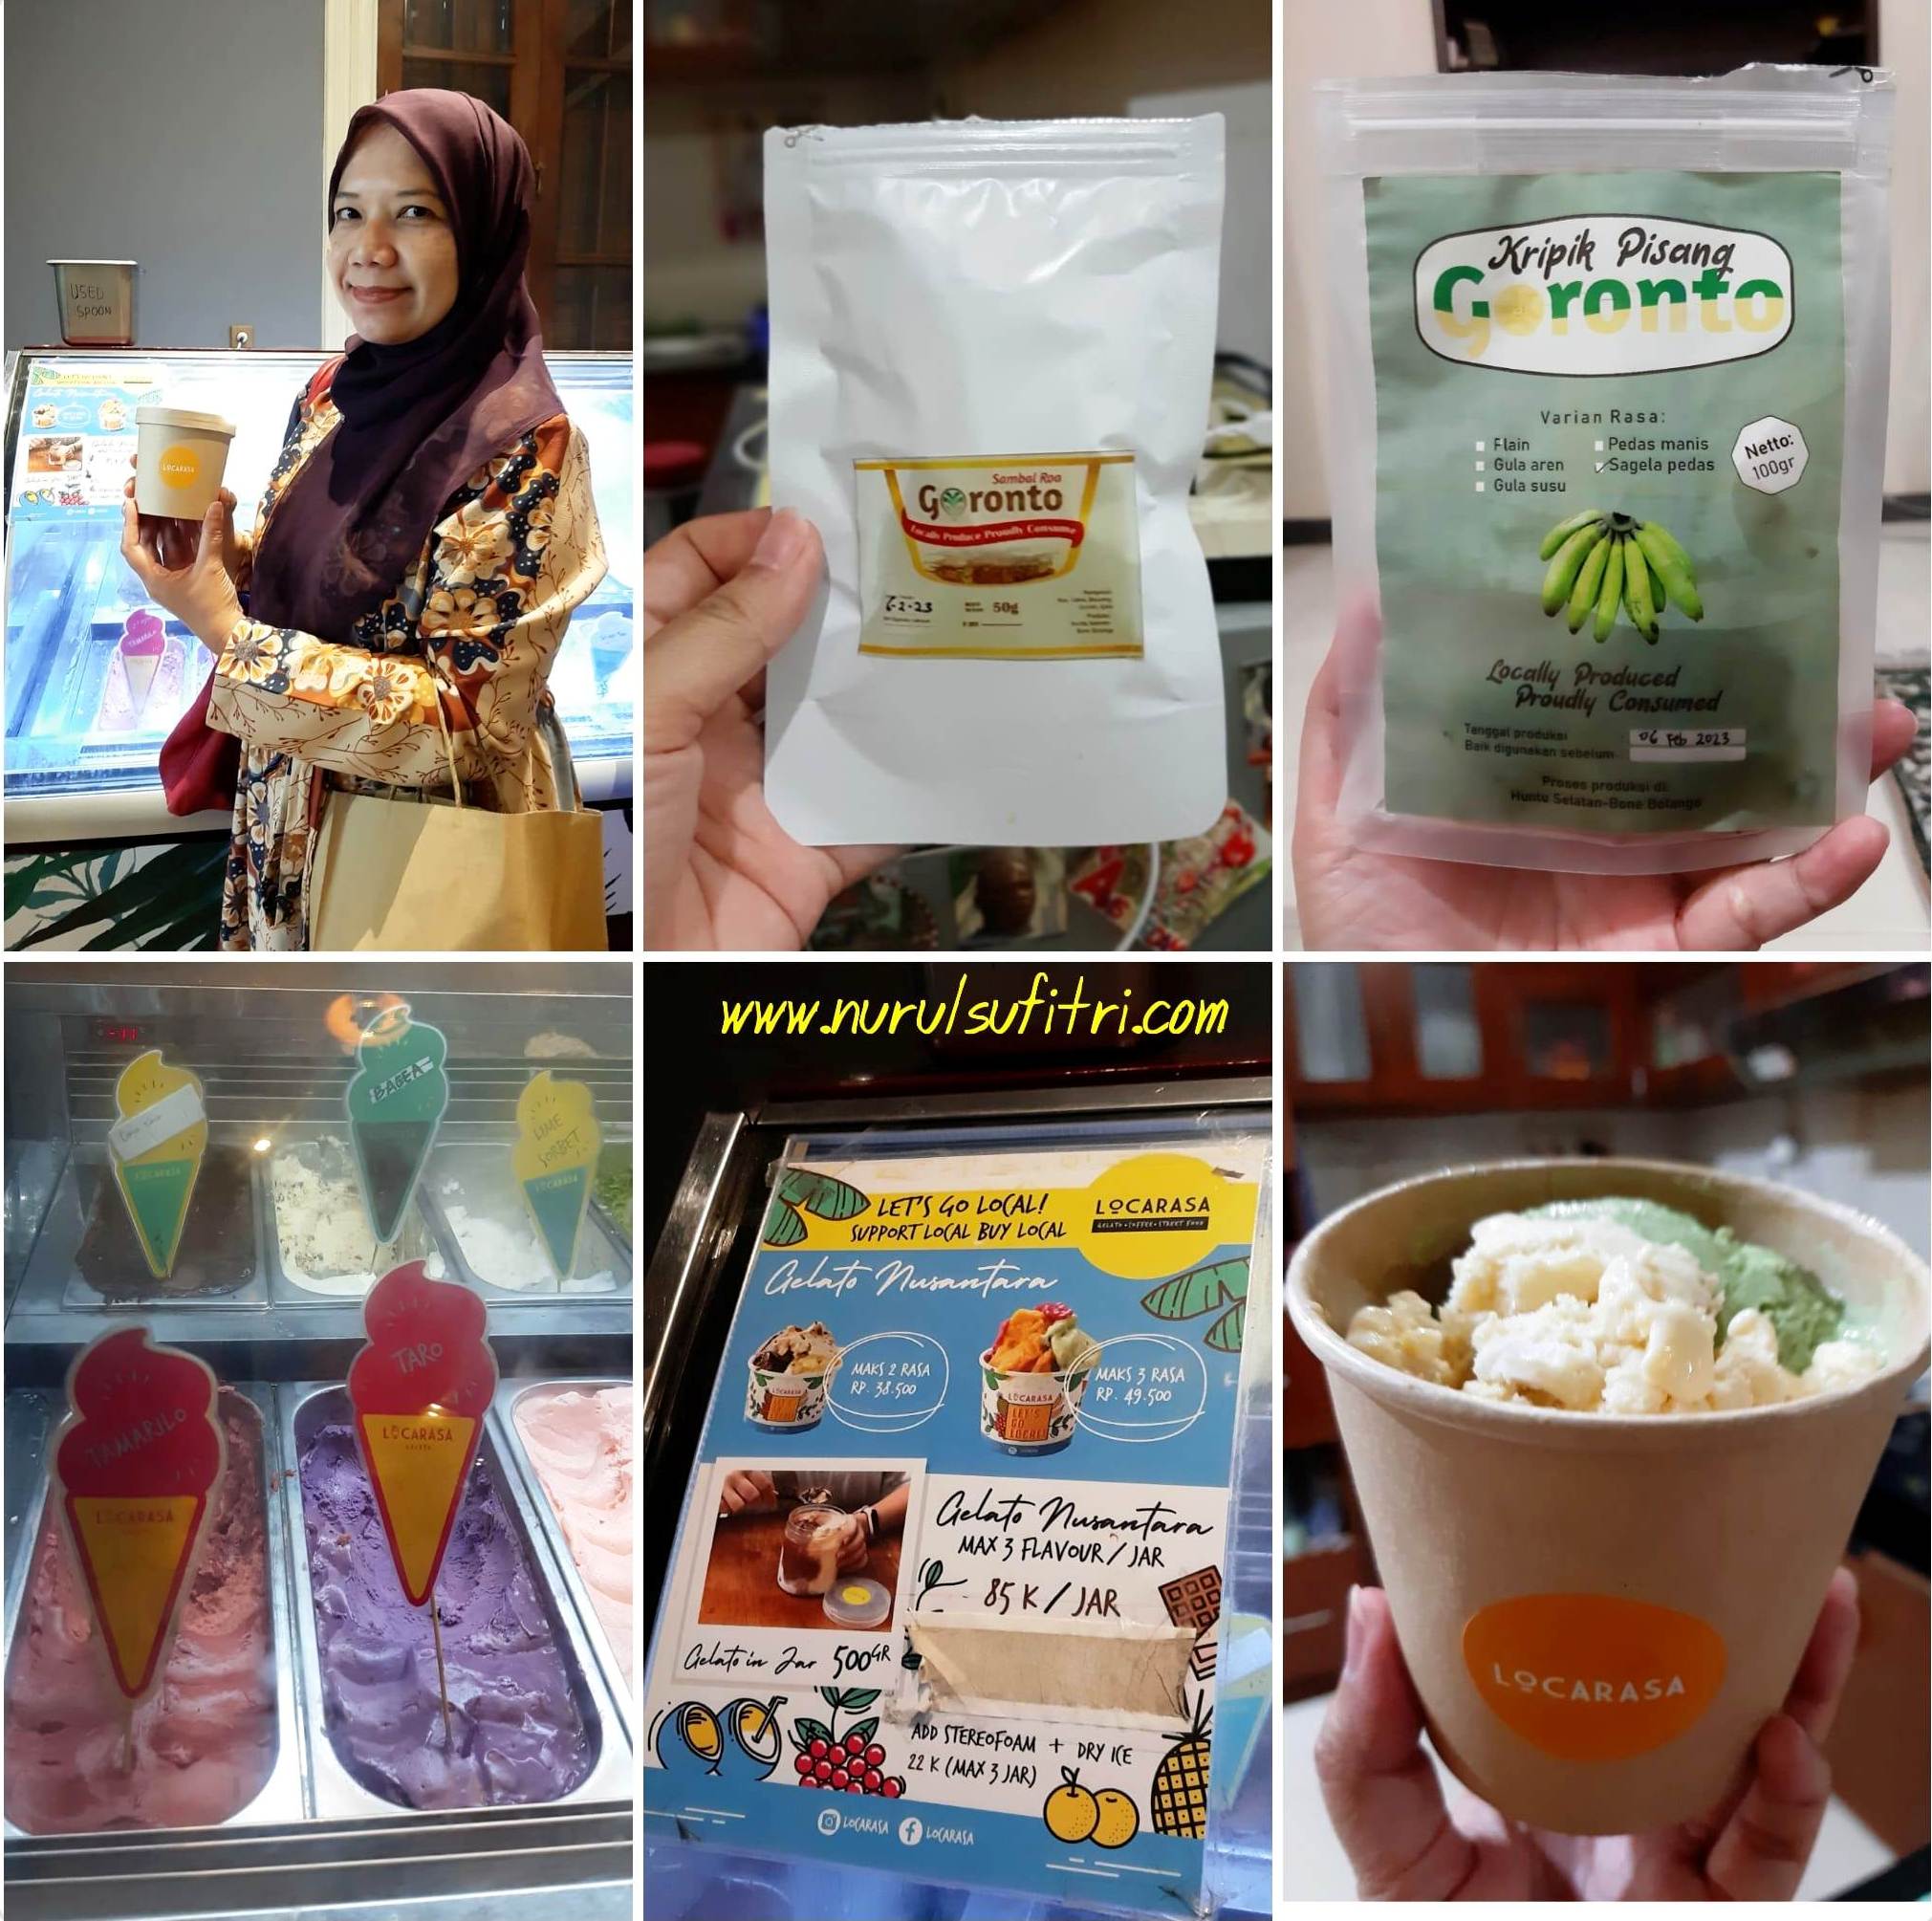 Peluncuran Buku Sambal Roa Ragam Resep Rupiah dan Icip Icip Kuliner Gorontalo